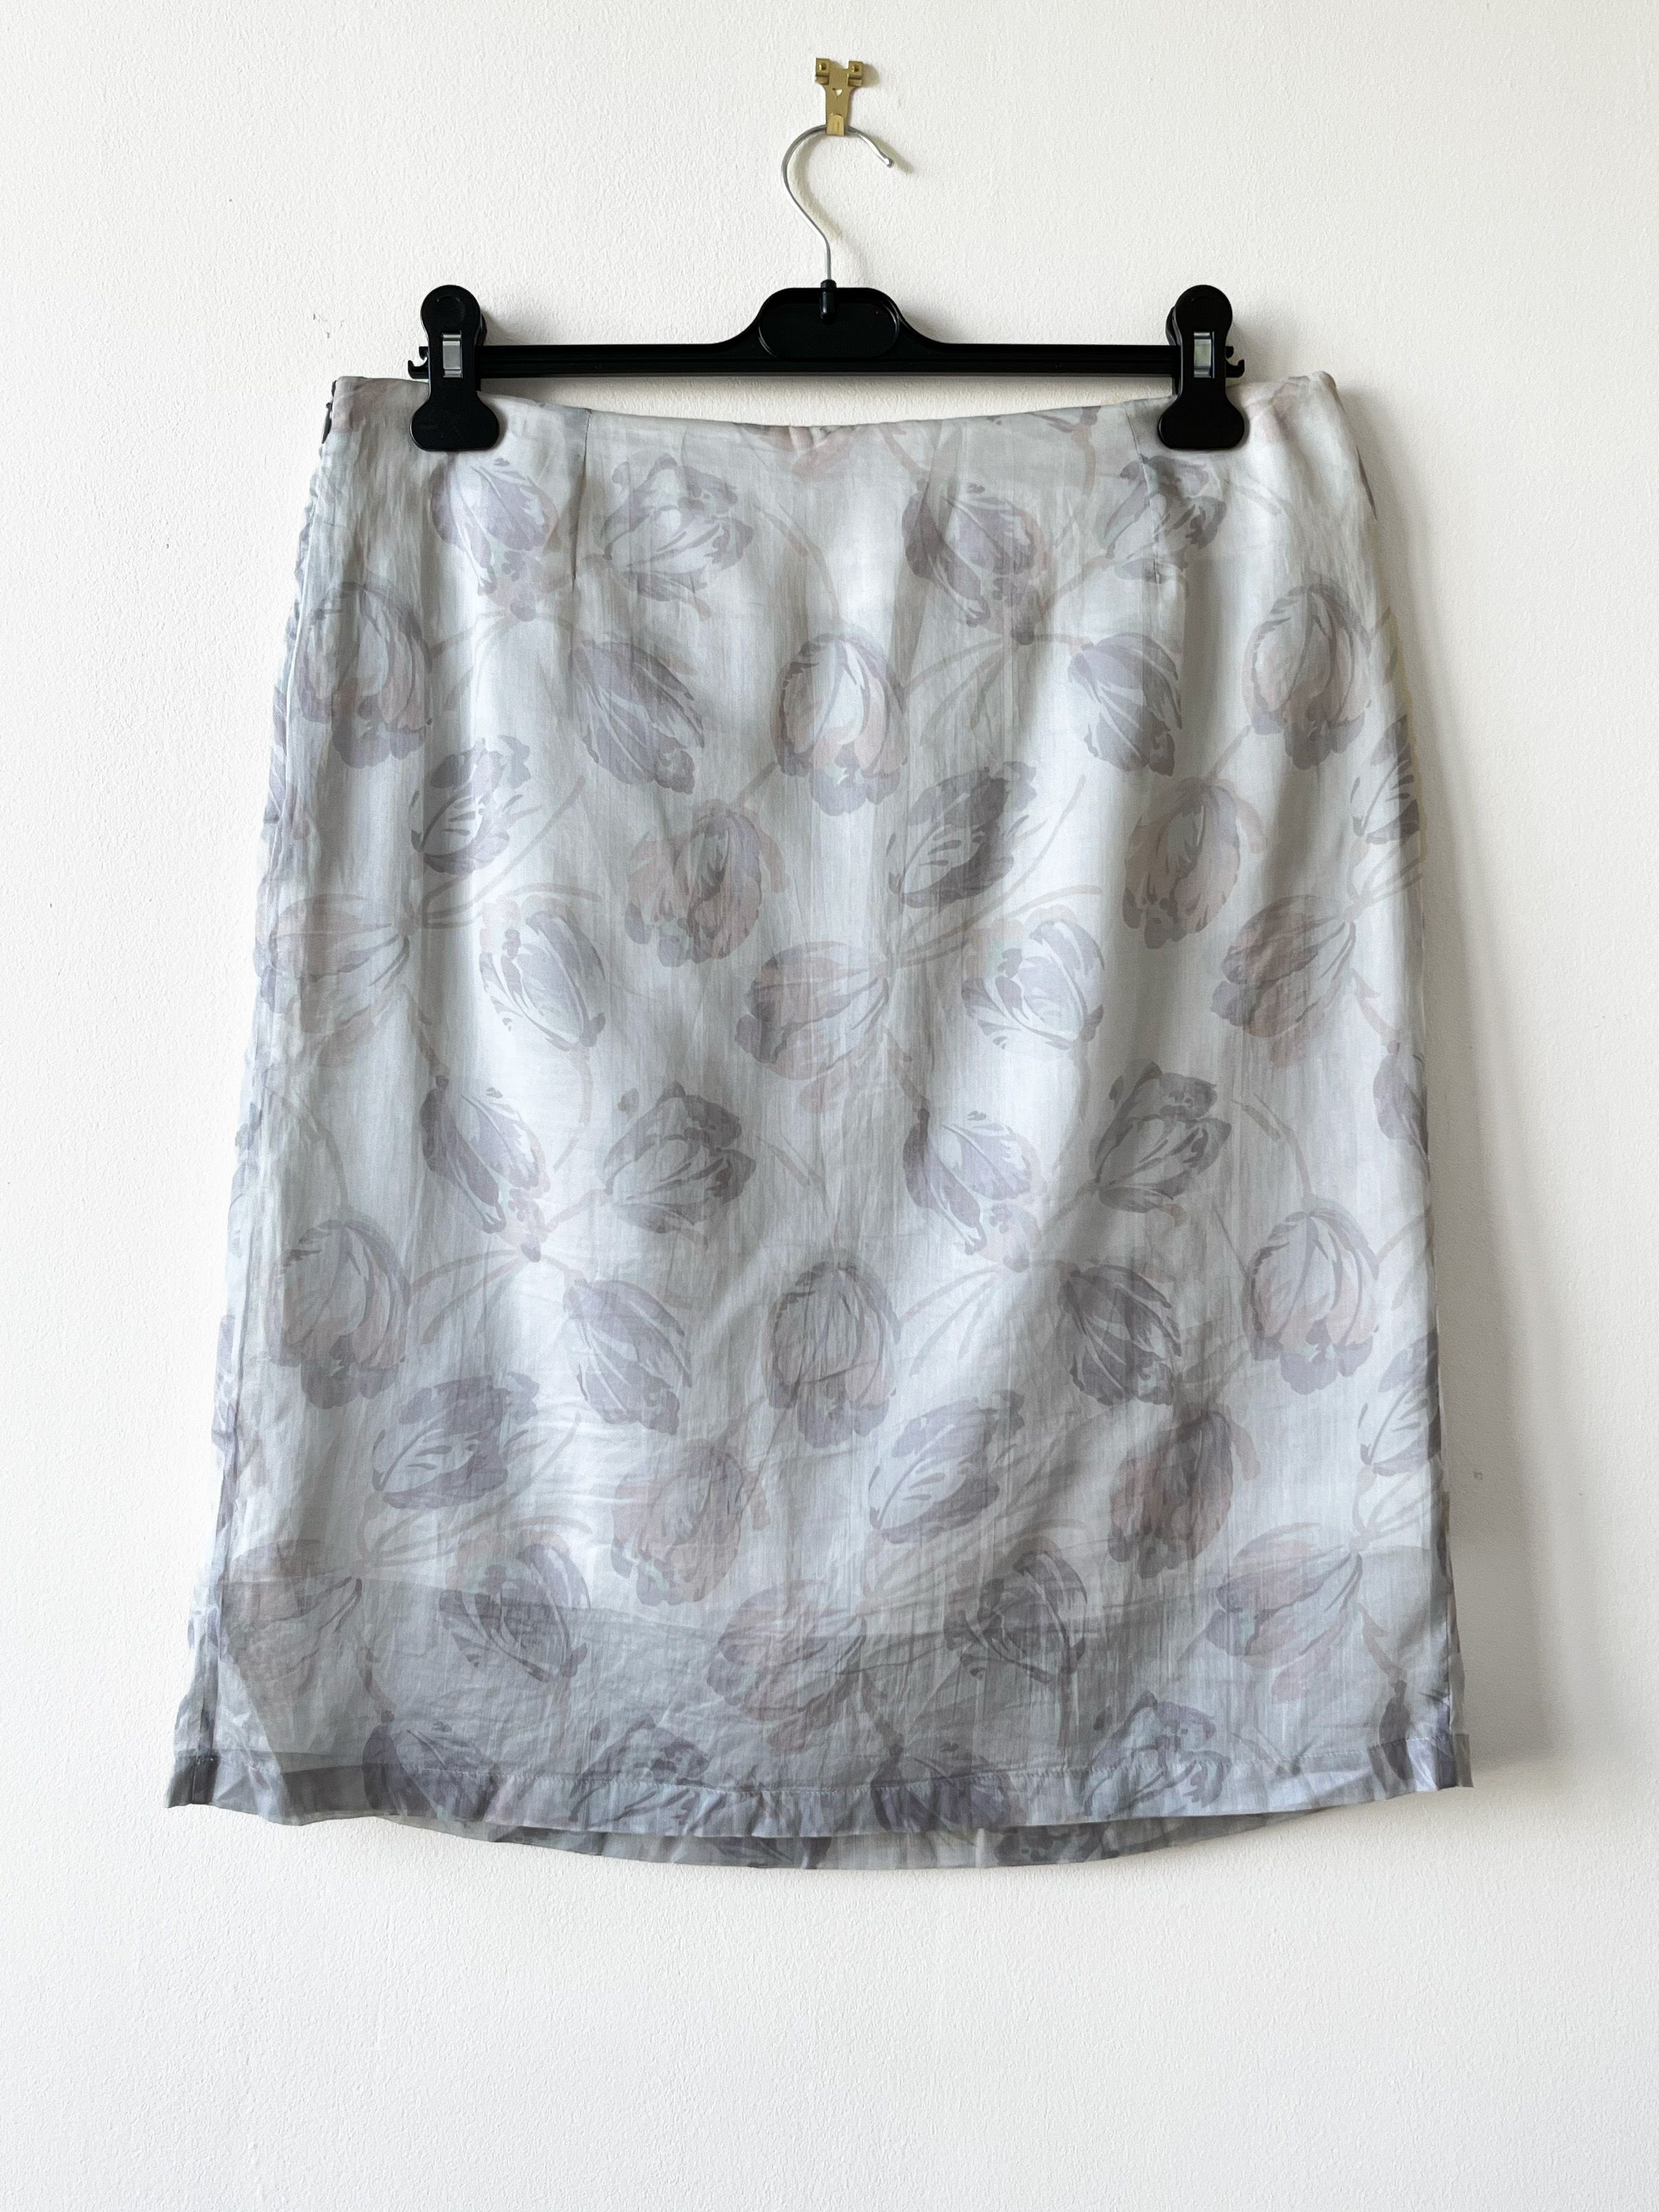 Dries Van Noten Dries van noten grey floral print silk skirt Size 30" / US 8 / IT 44 - 2 Preview